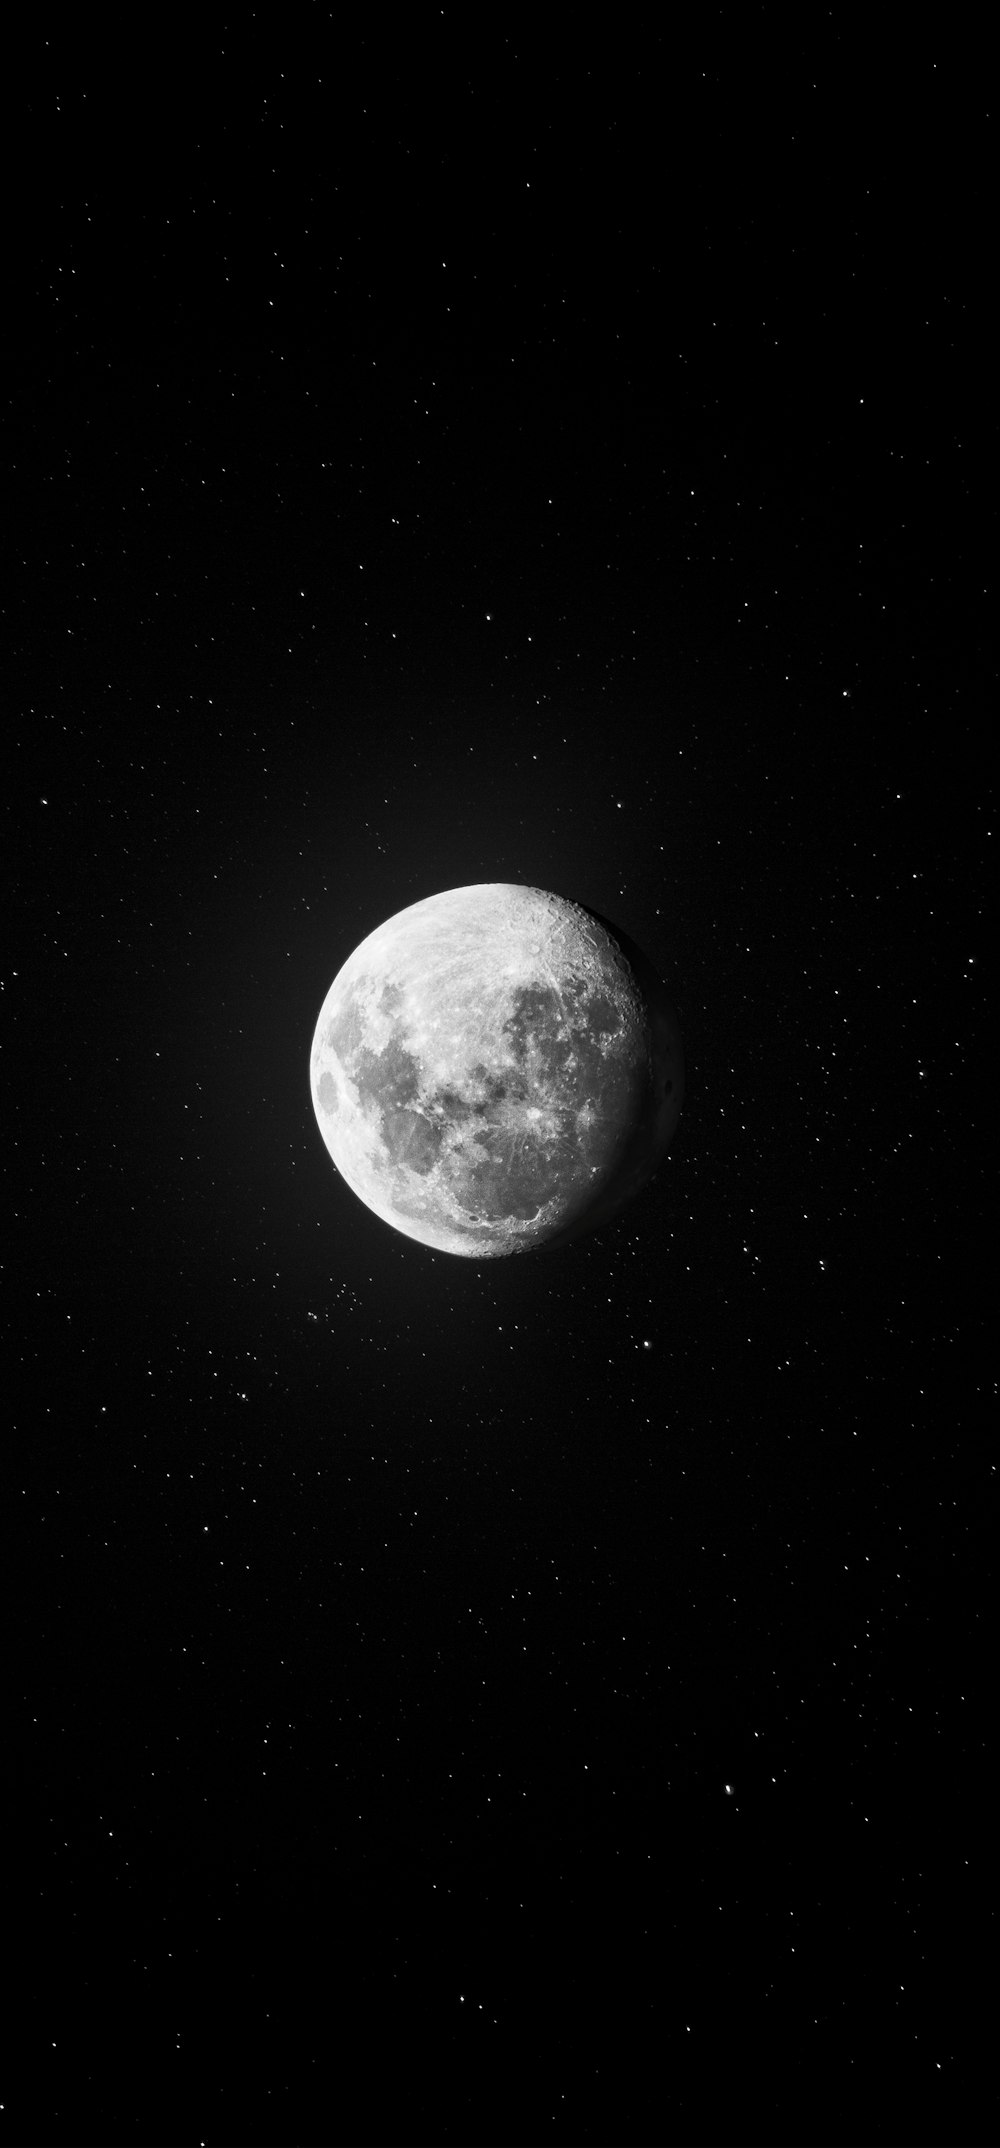 Bạn muốn tìm kiếm những hình nền mặt trăng HD đẹp miễn phí để sử dụng? Đó là một quyết định đúng đắn, bởi càng chiêm ngưỡng các bức ảnh này, bạn sẽ càng trở nên yêu thiên nhiên và biết ơn cuộc sống hơn. Tất cả chỉ mất vài phút để tải về thôi!